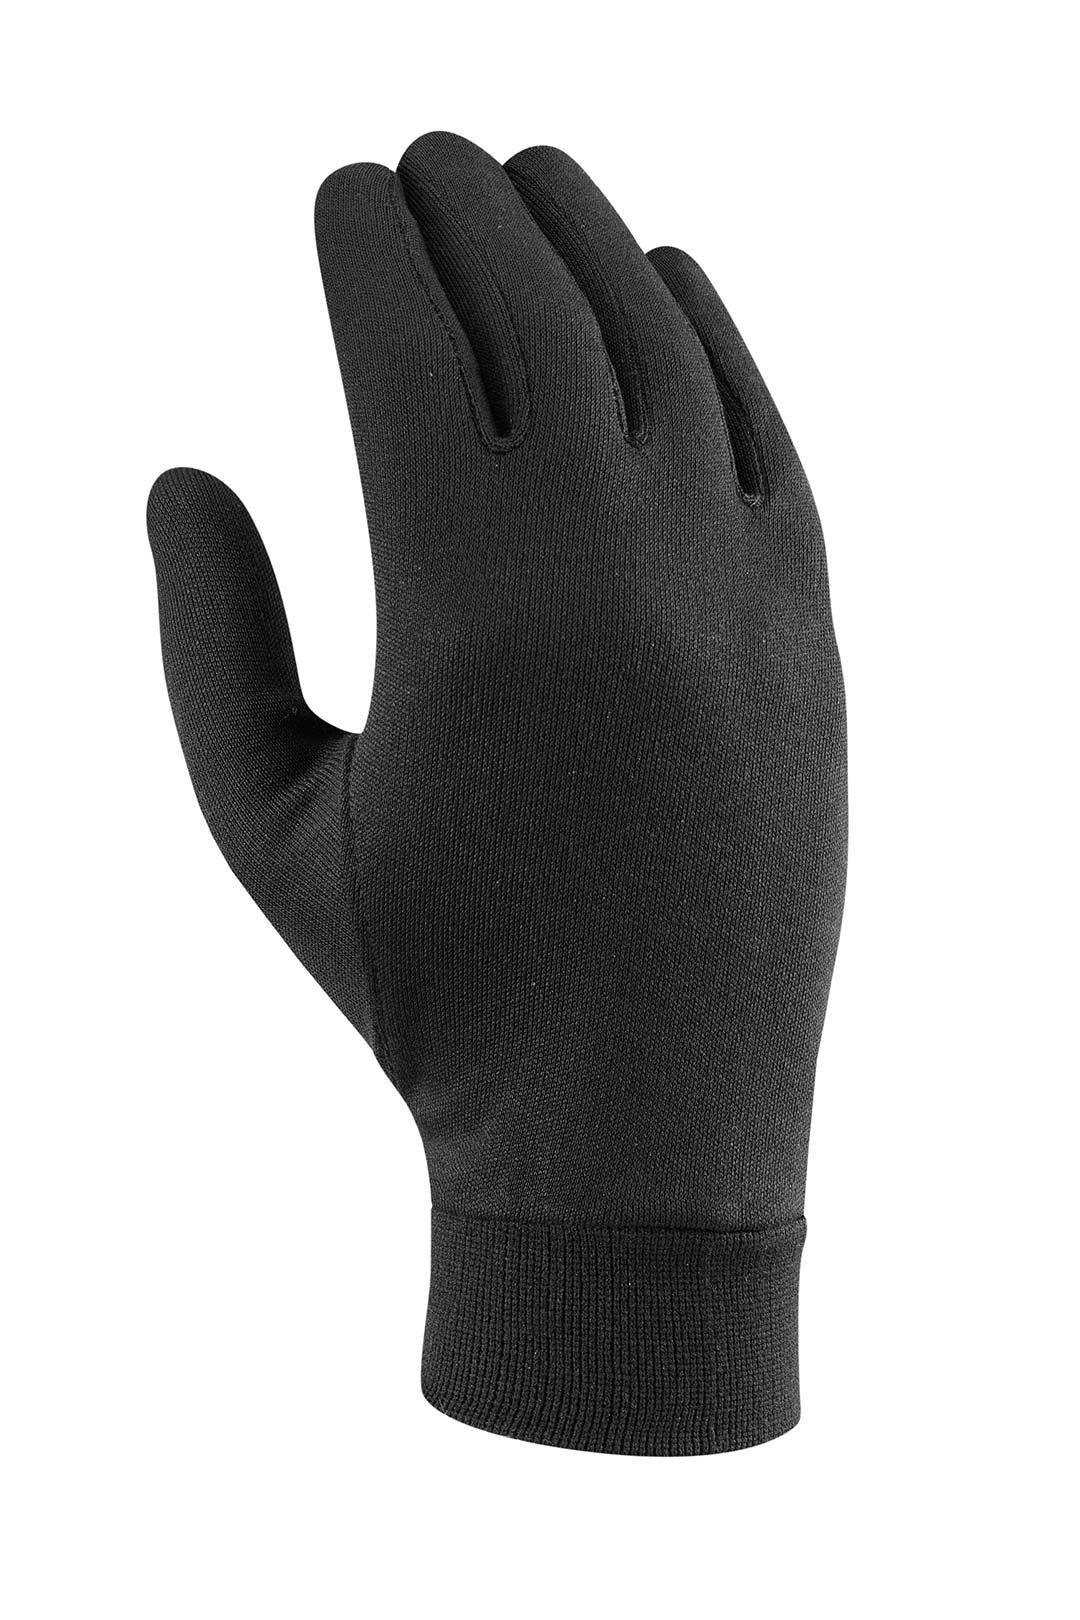 Silk Warm Gloves - Black